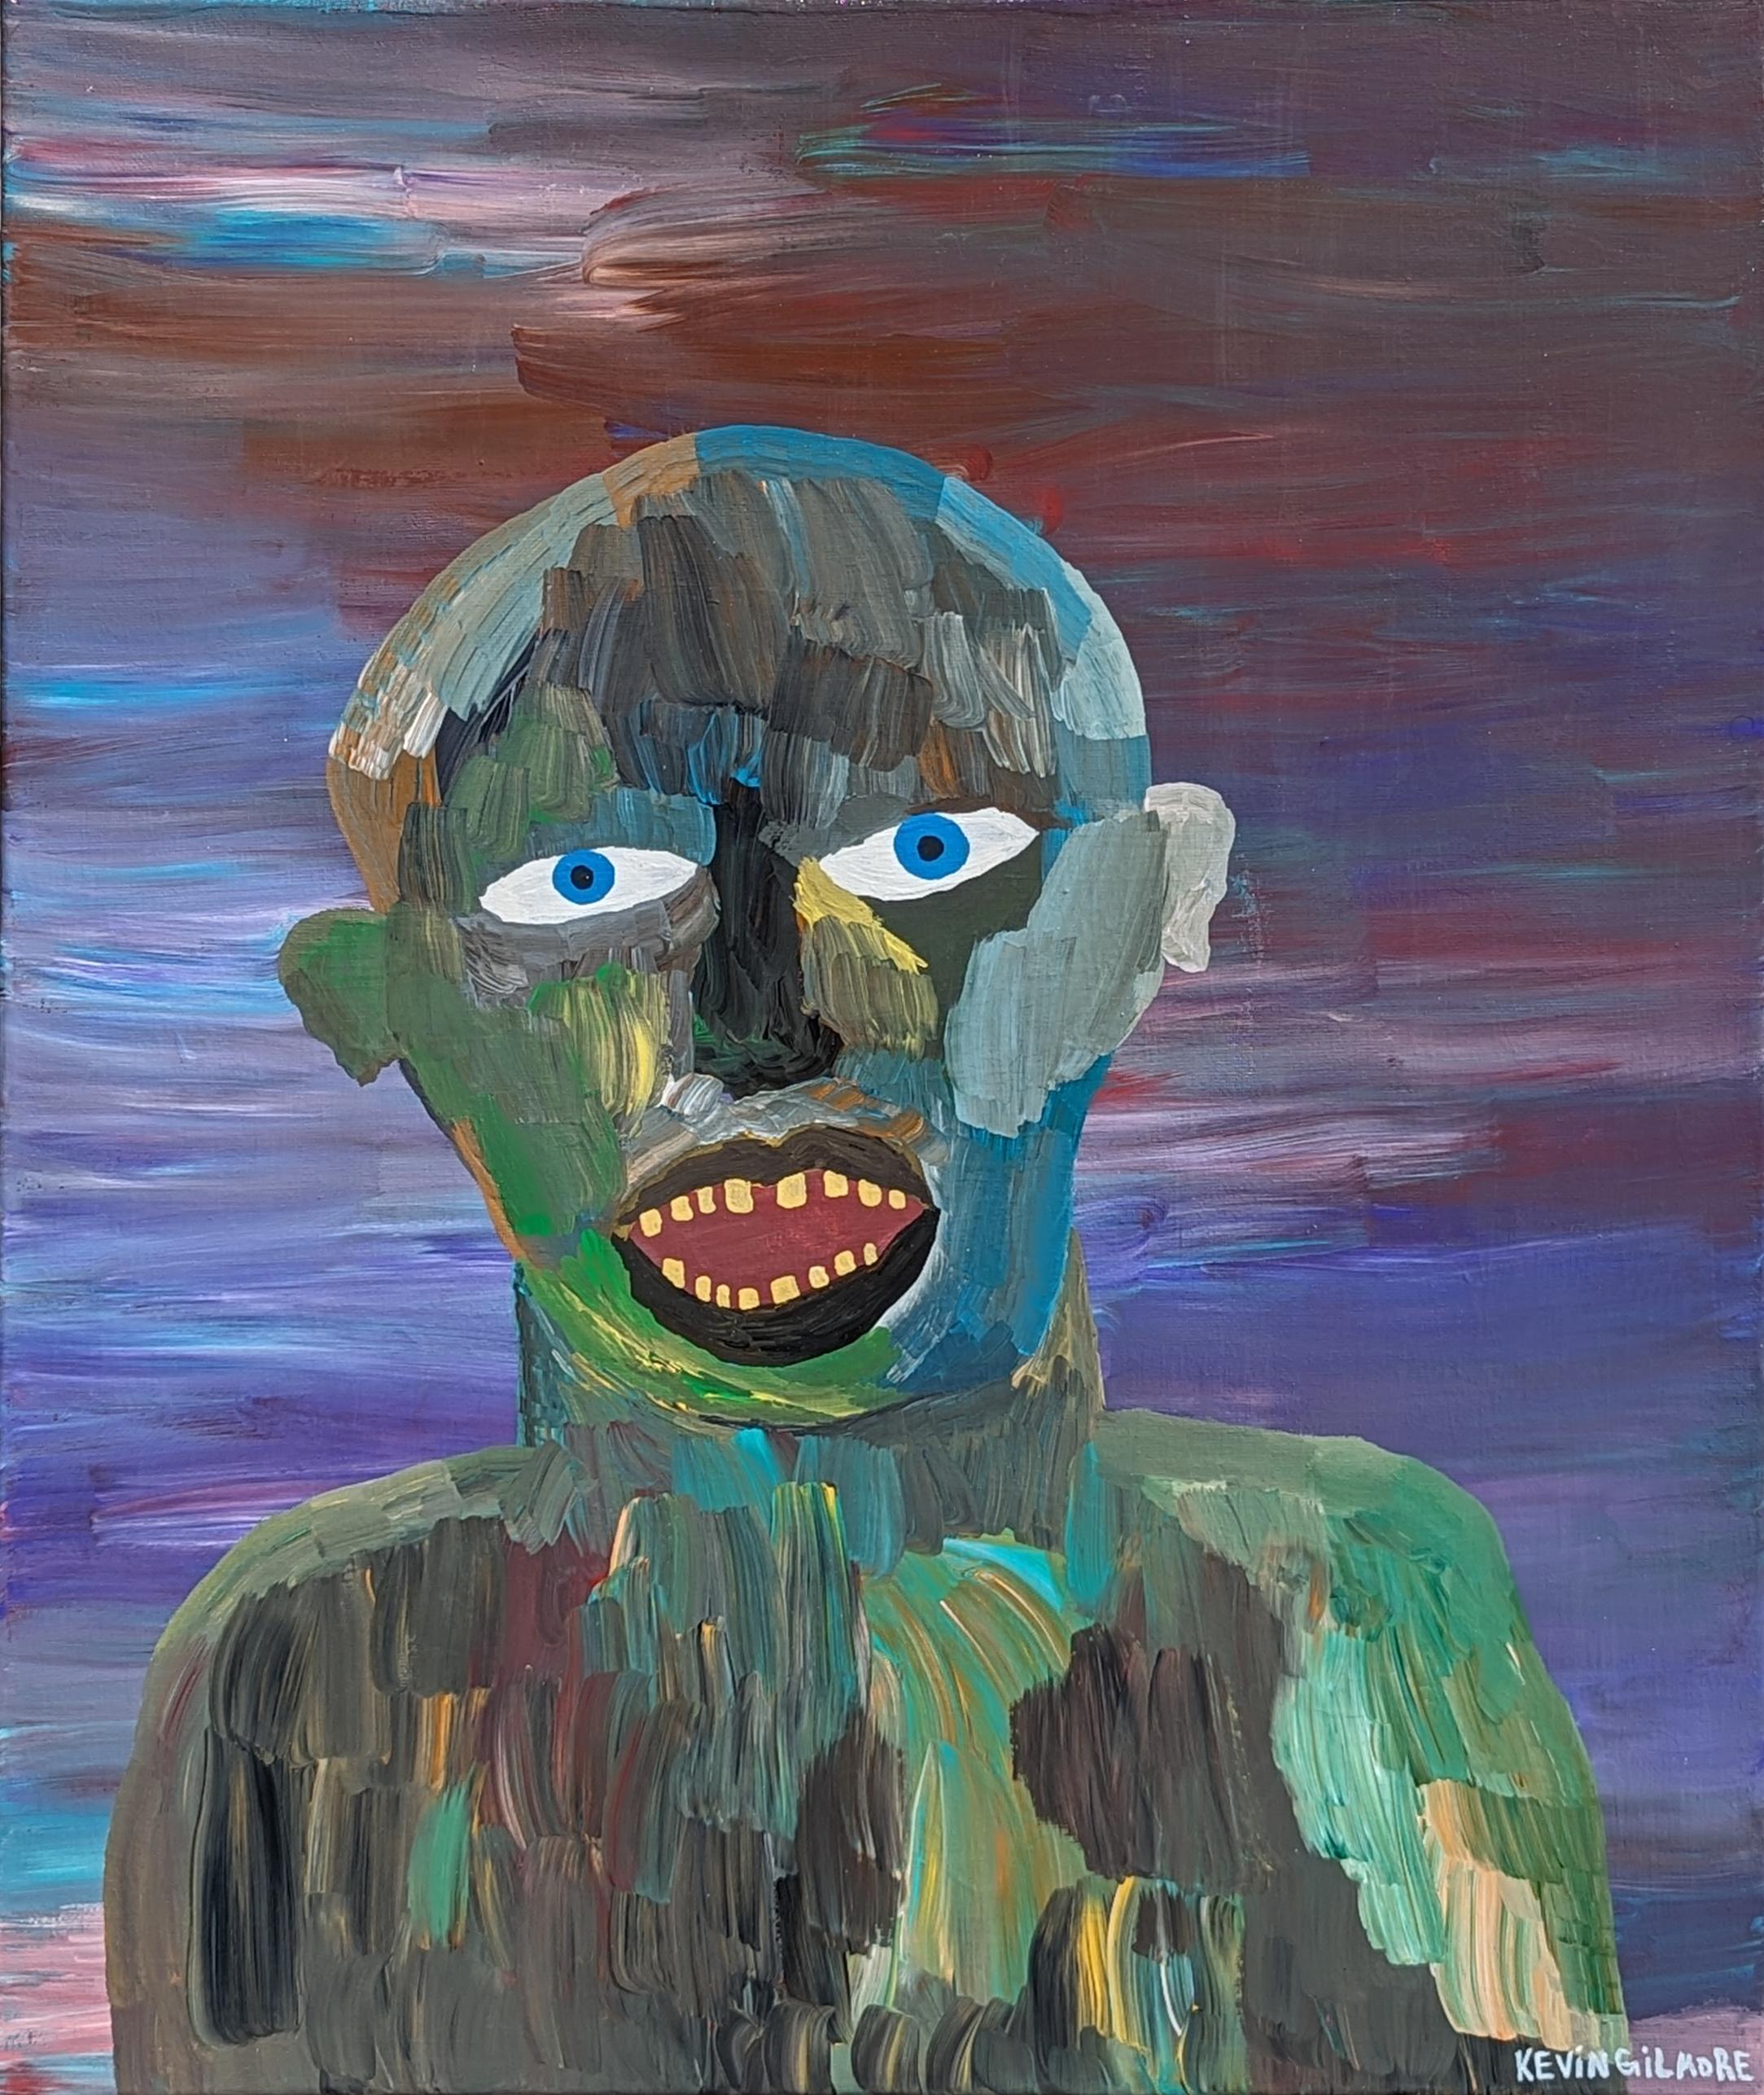 Kevin Gilmore Portrait Painting – "By myself" Zeitgenössische lila getönte Outsider Art figurative Portrait Malerei